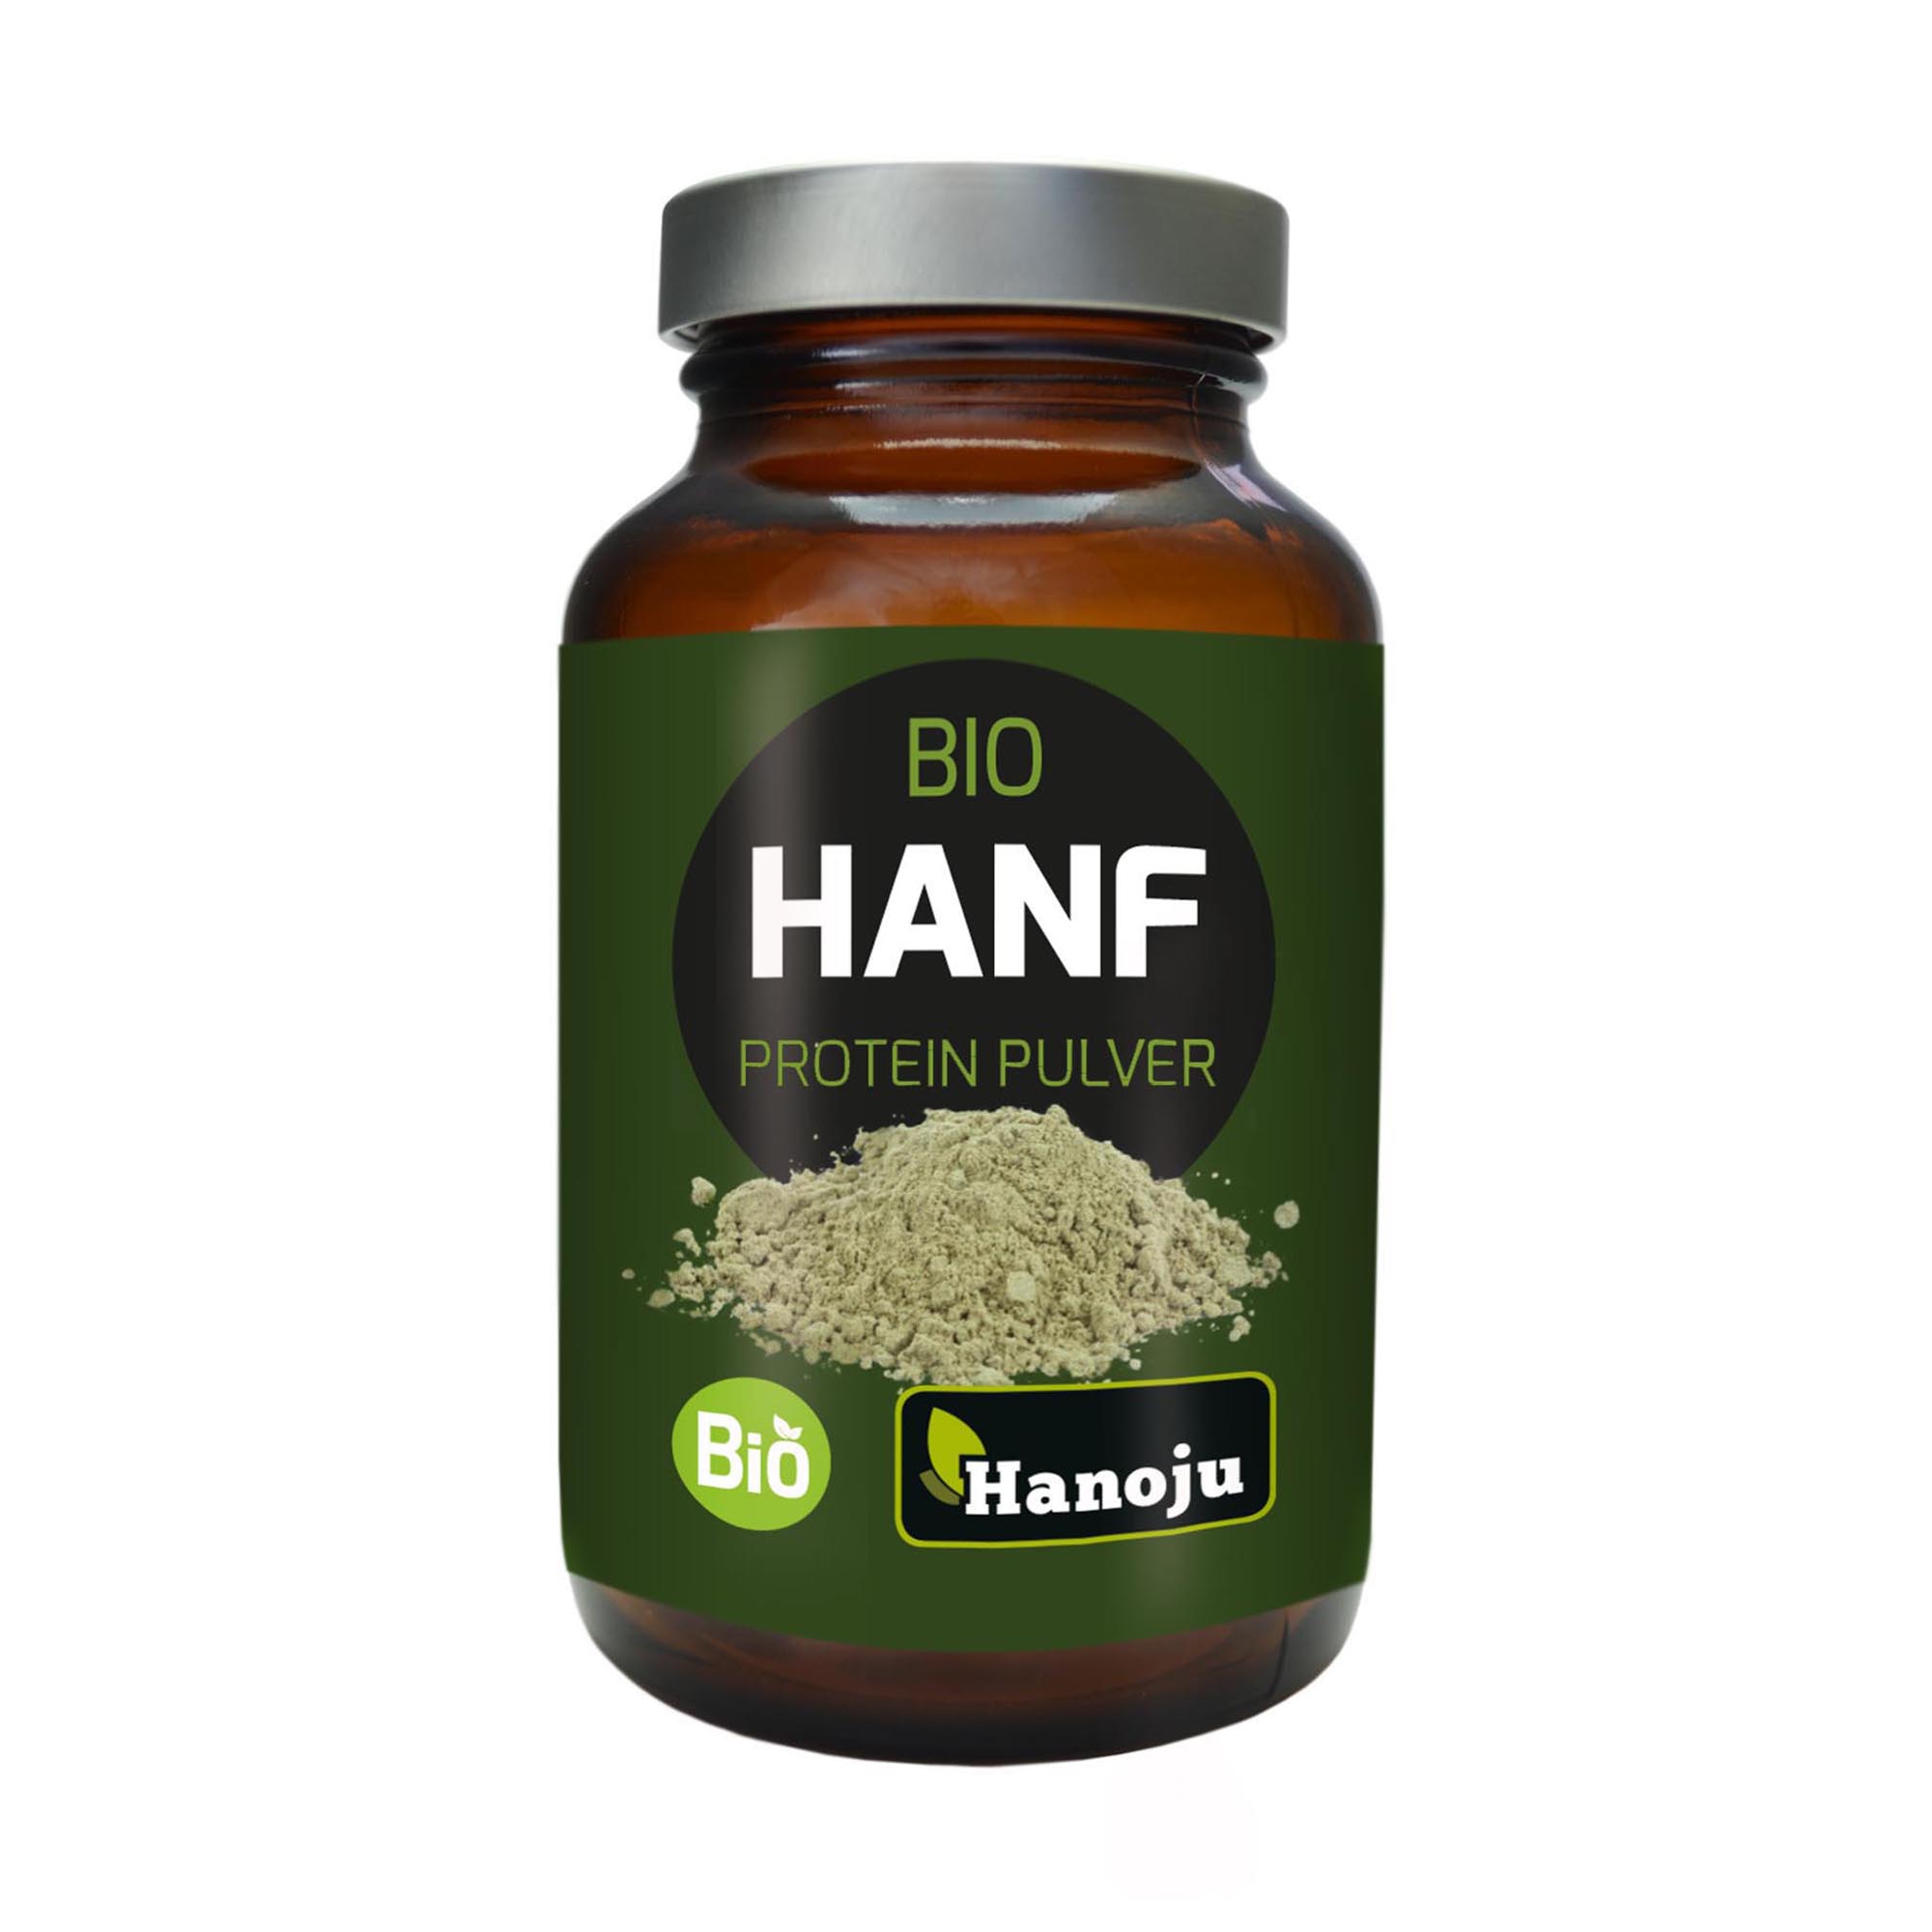 Hanoju Hanf Protein Pulver Bio